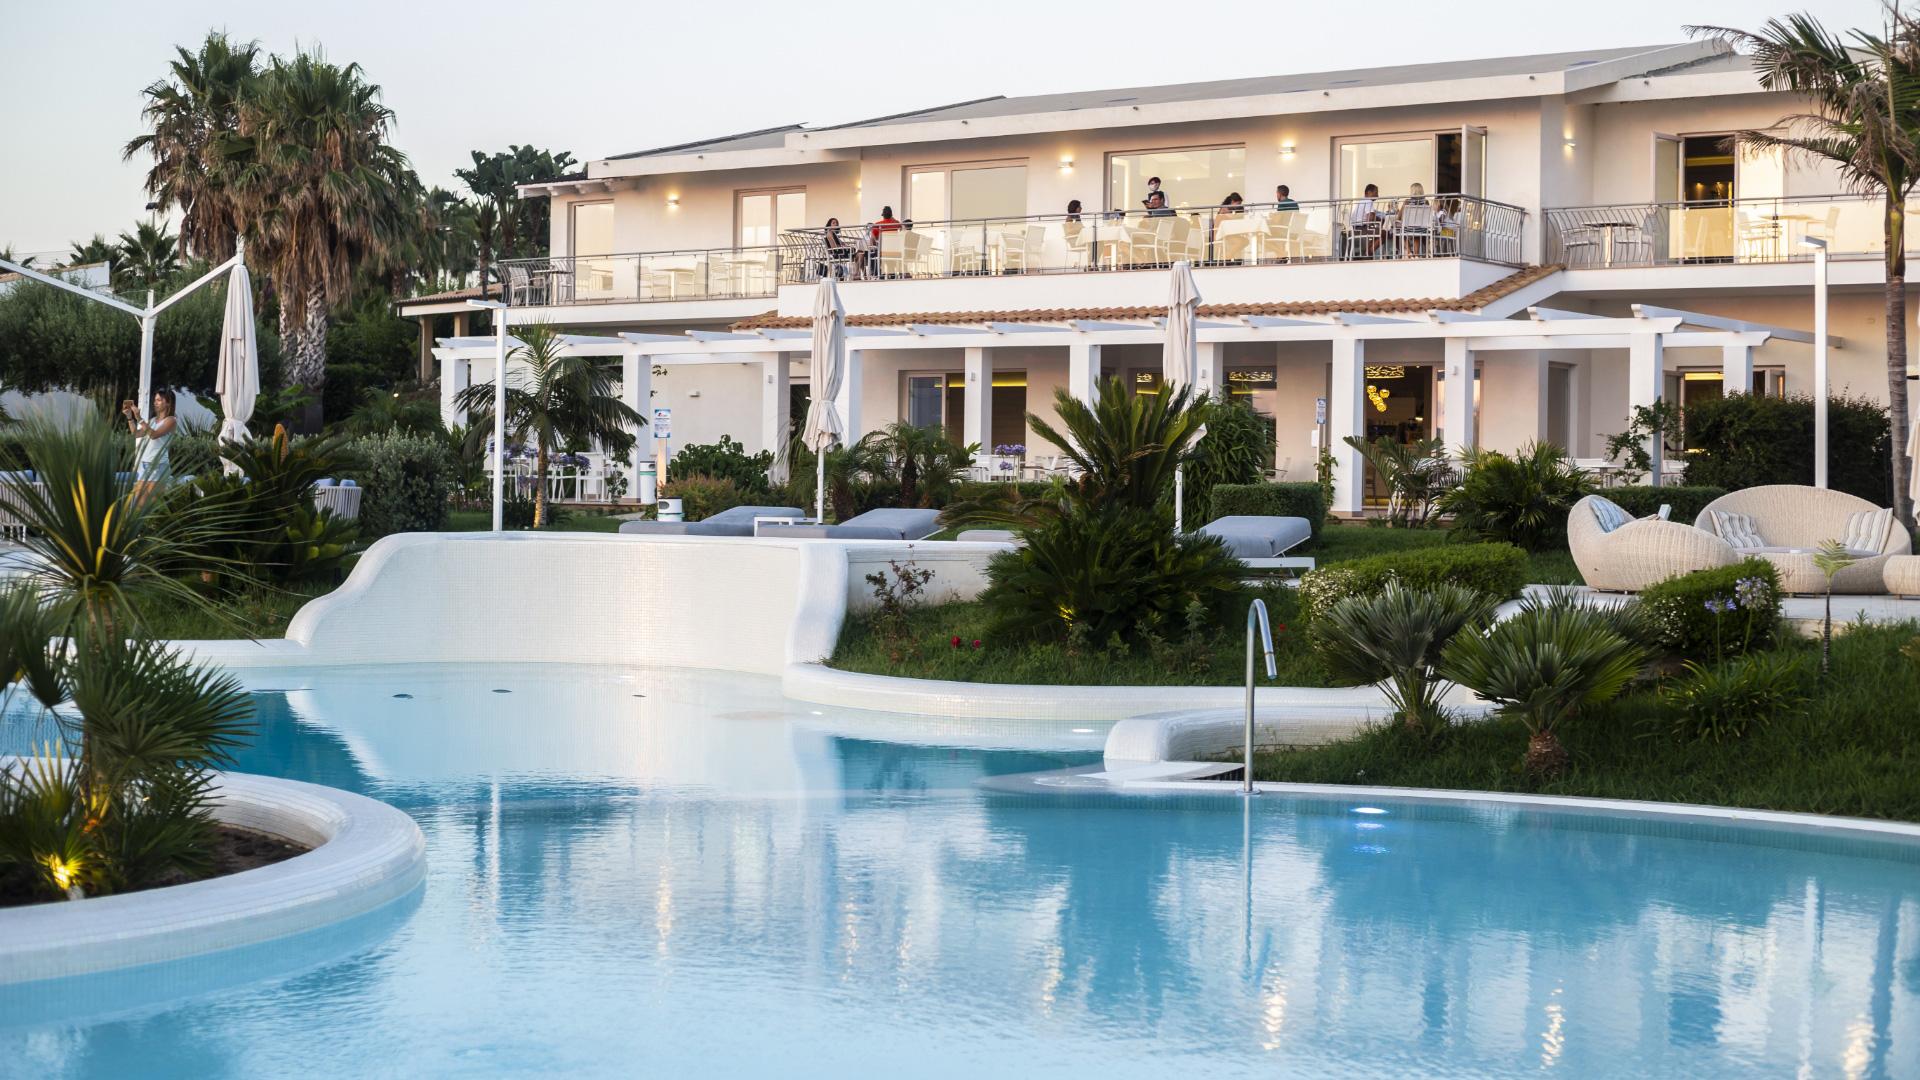 Resort di lusso con piscina e giardino tropicale.